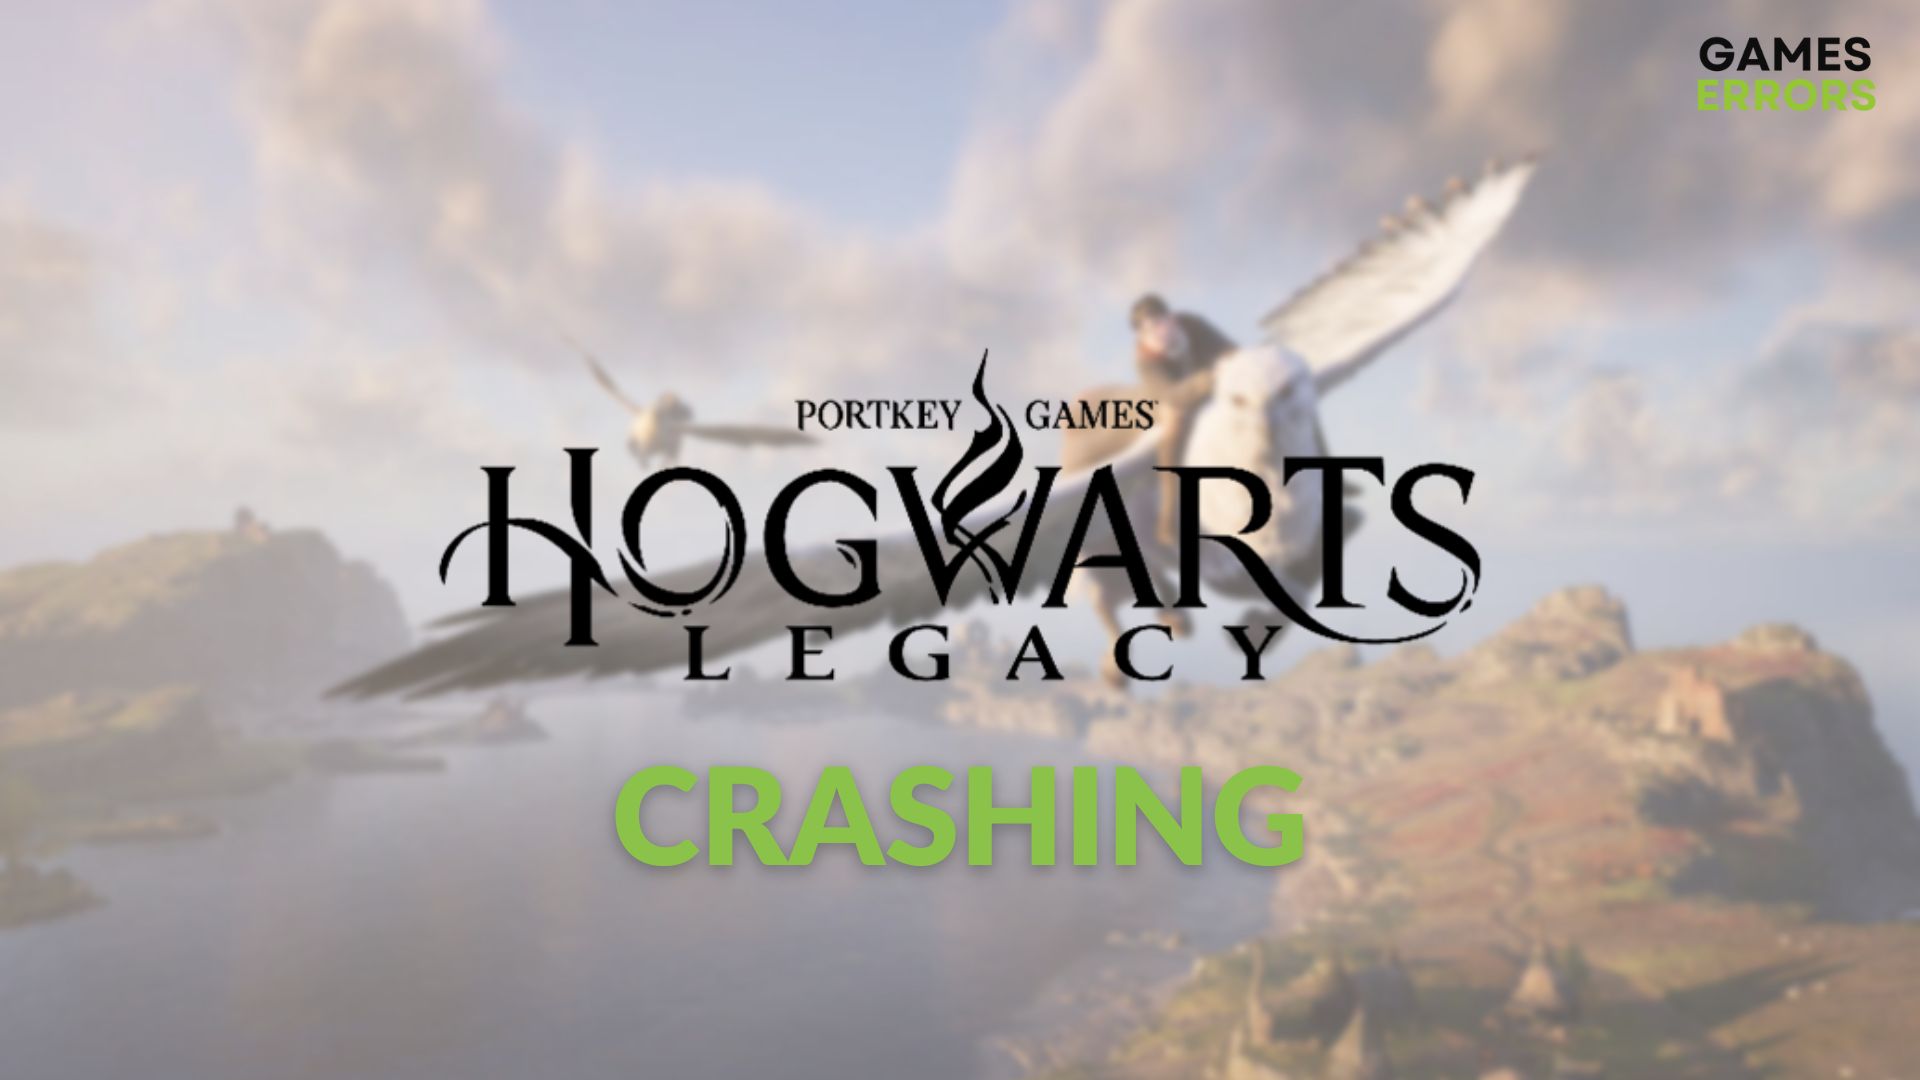 Hogwarts Legacy Crashing On PC